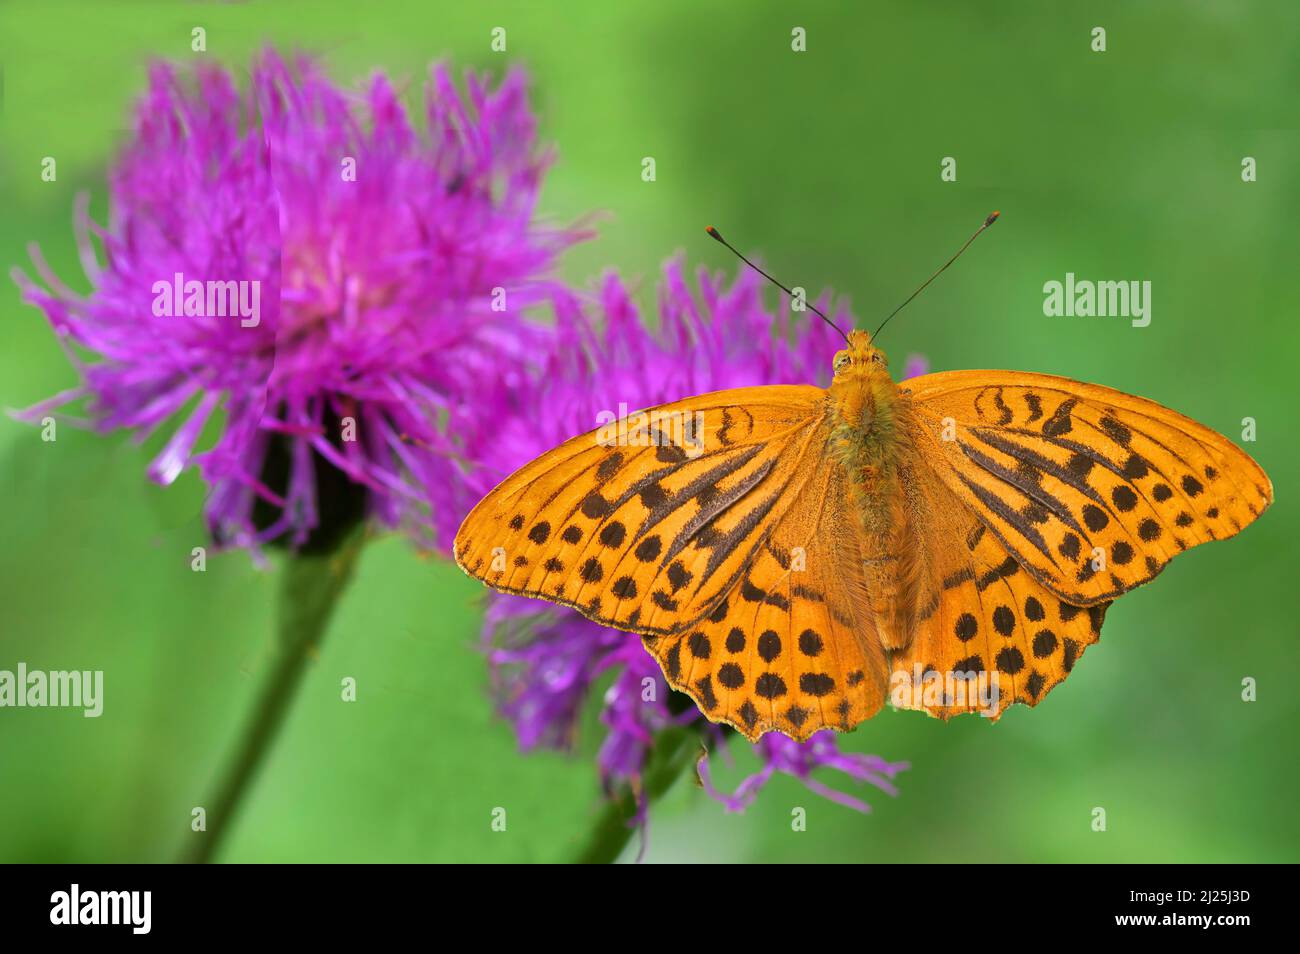 Le papillon fritillaire lavé à l'argent (Argynnis paphia) boit le nectar d'une fleur de Thhistle de taureau (Cirsium vulgare). Autriche Banque D'Images